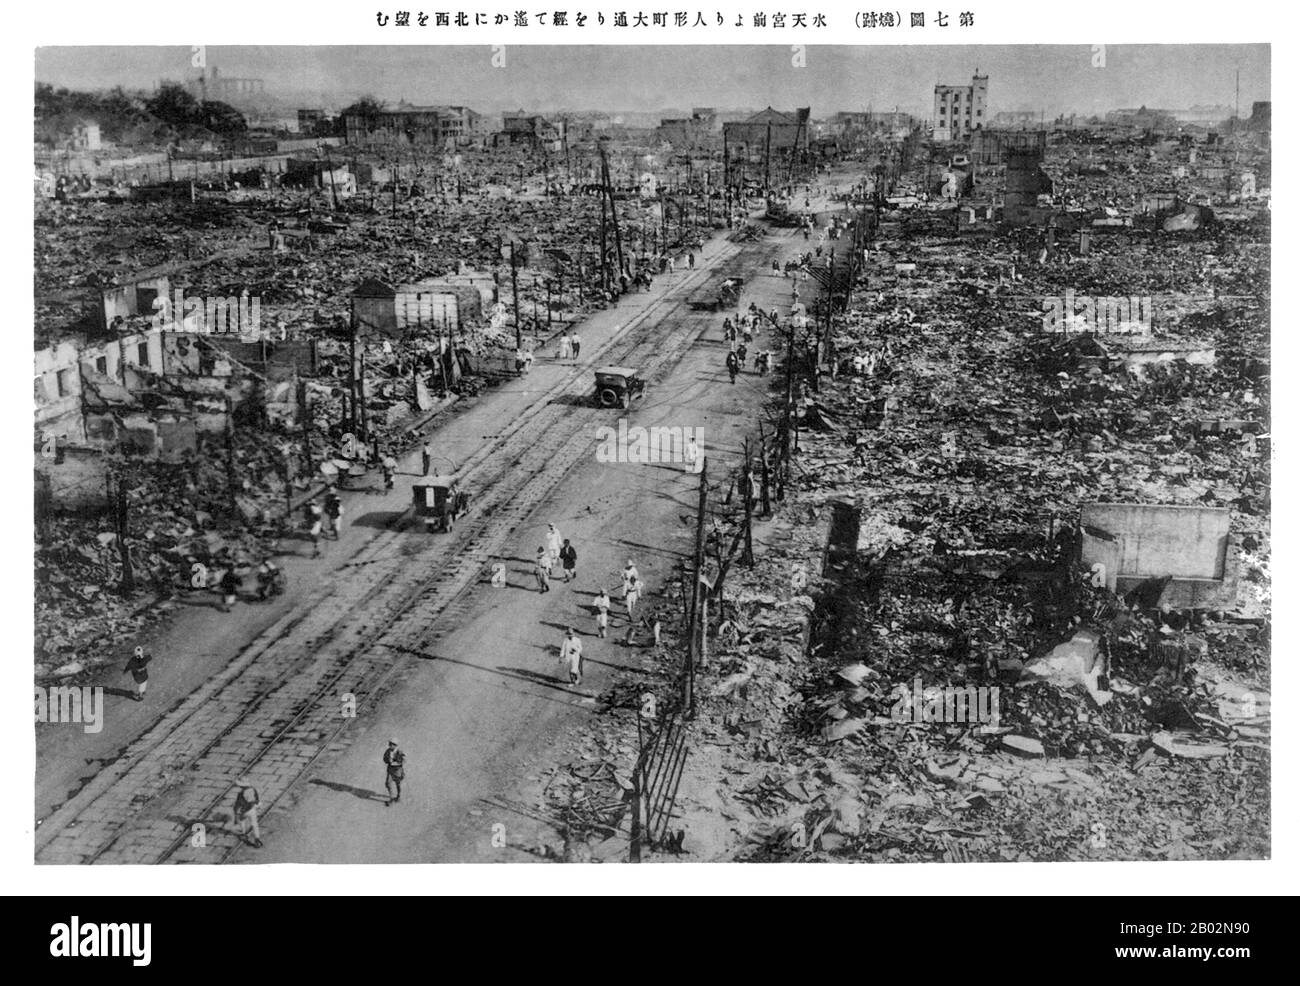 El gran terremoto de Kantō (関東大震災 Kantō daishinsai) azotó la llanura de Kantō en la isla principal japonesa de Honshū a las 11:58 de la mañana del sábado, 1 de septiembre de 1923. Diversos relatos indican que la duración del terremoto fue de entre cuatro y 10 minutos. El terremoto de 2011 Tōhoku más tarde superó ese récord, en magnitud 9.0. El terremoto tuvo una magnitud de 7.9 en la escala De magnitud Del Momento (Mw), con su foco profundo debajo de la isla Izu Ōshima en la bahía Sagami. La causa fue una ruptura de parte de la frontera convergente donde la placa de Mar de Filipinas se está subducando debajo del Plat de Okhotsk Foto de stock